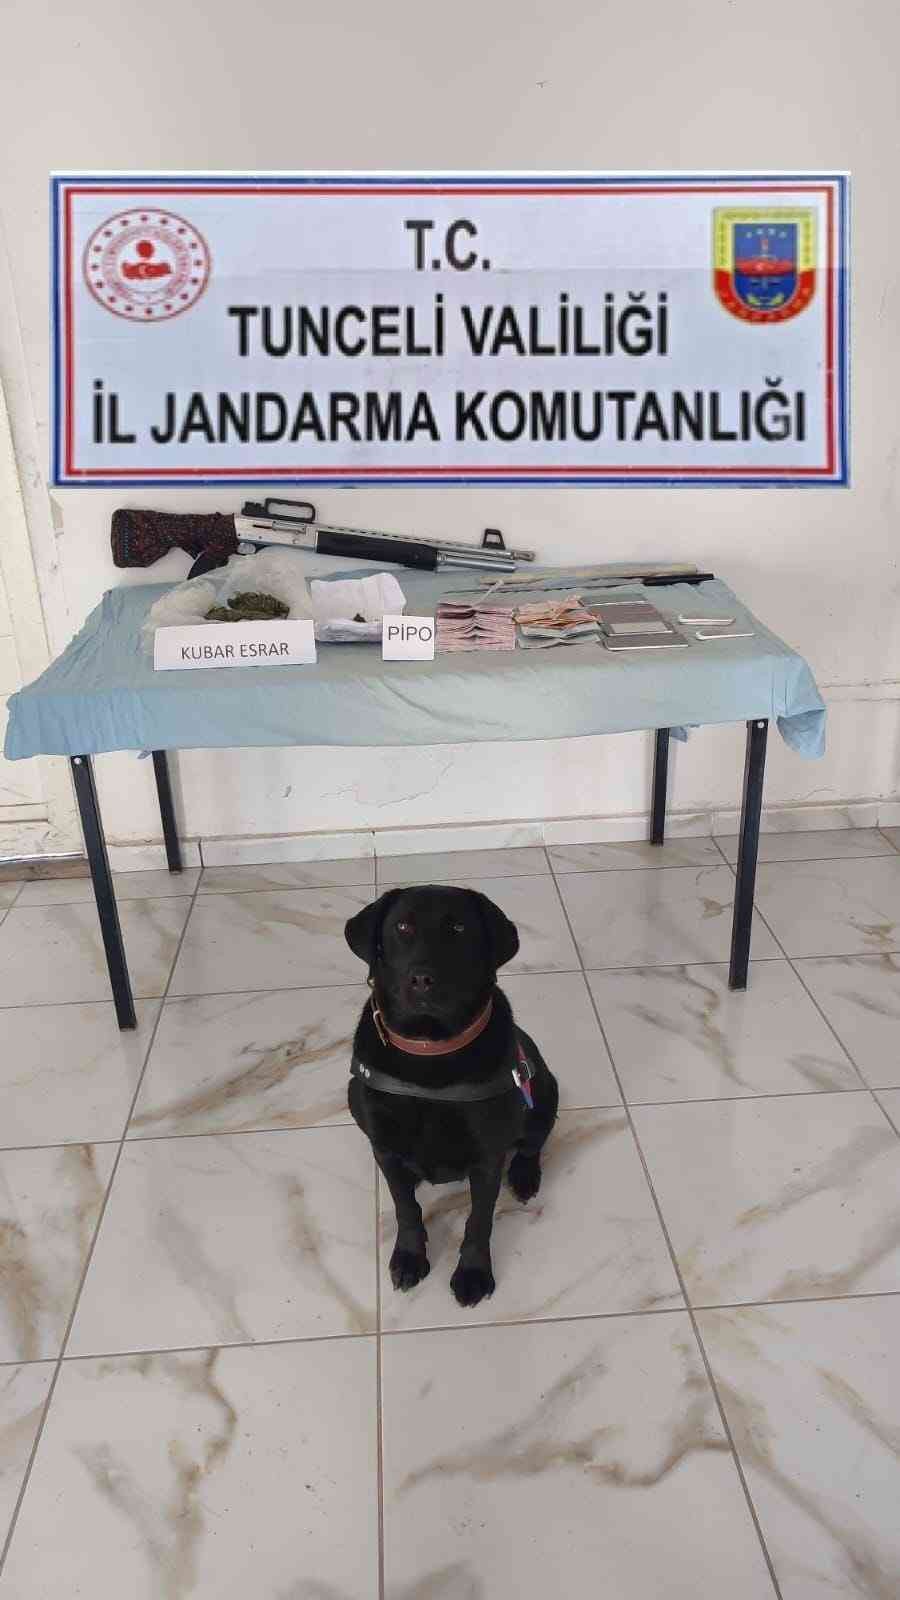 Tunceli’de uyuşturucu operasyonu: 1 gözaltı